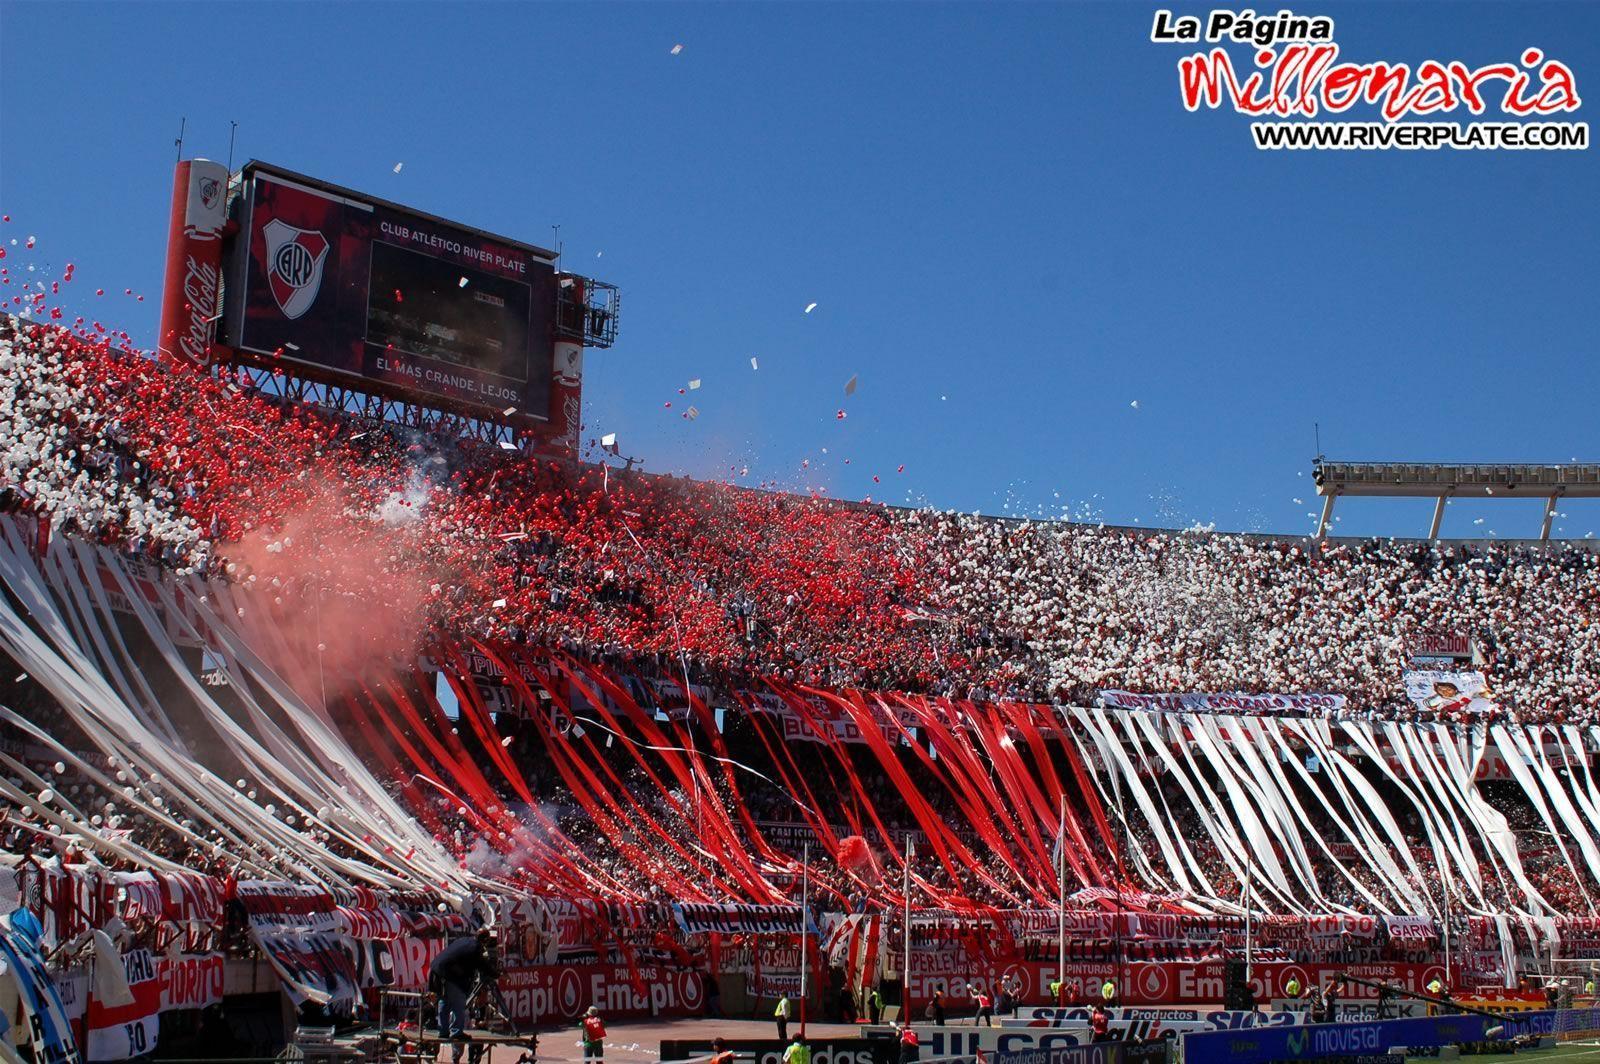 Wallpaper HD, 3D & de River Plate!